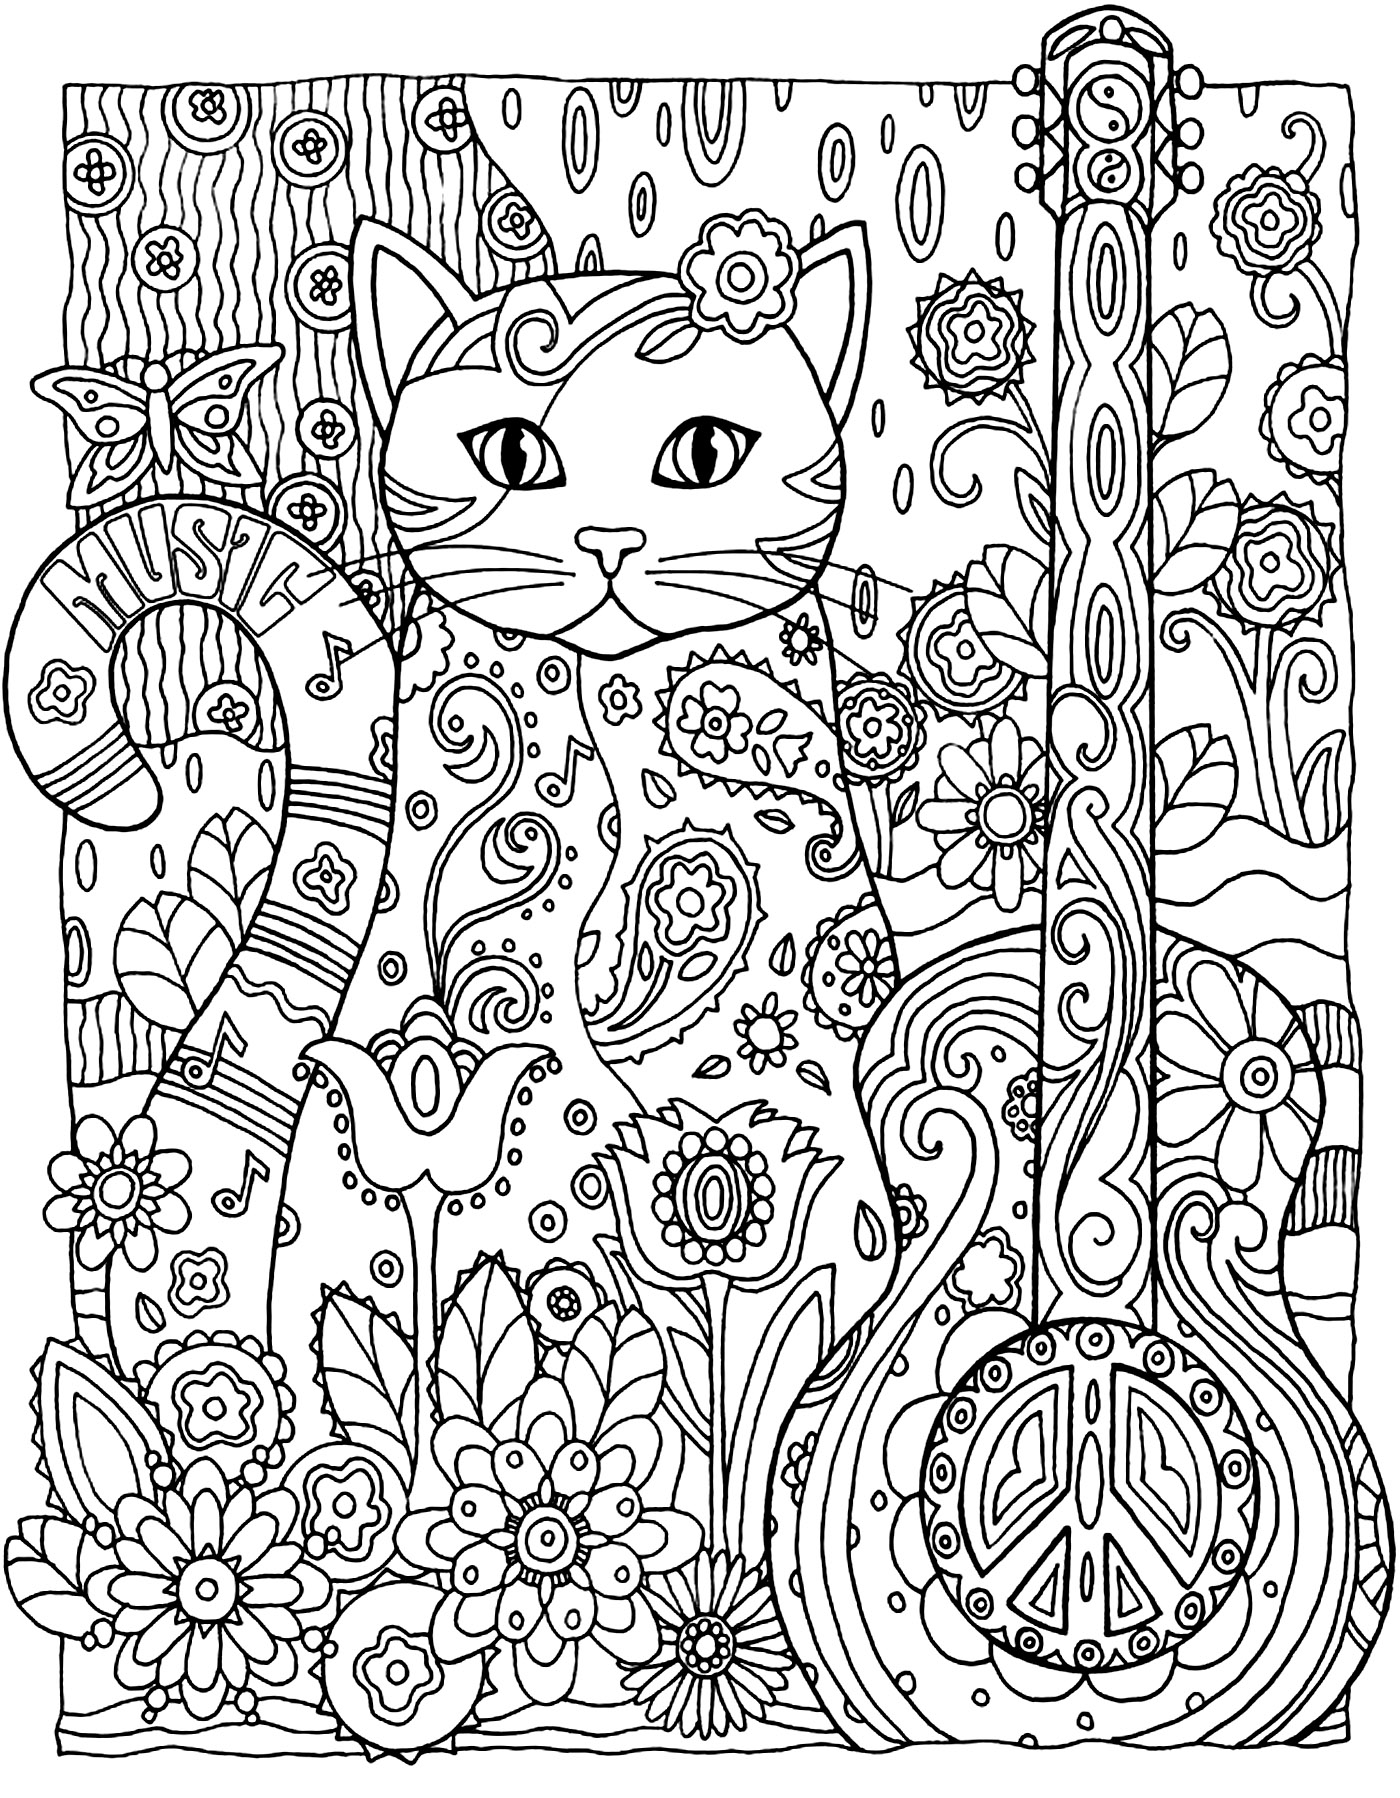 Desenhos para colorir gratuitos de Gatos para crianças - Gatos